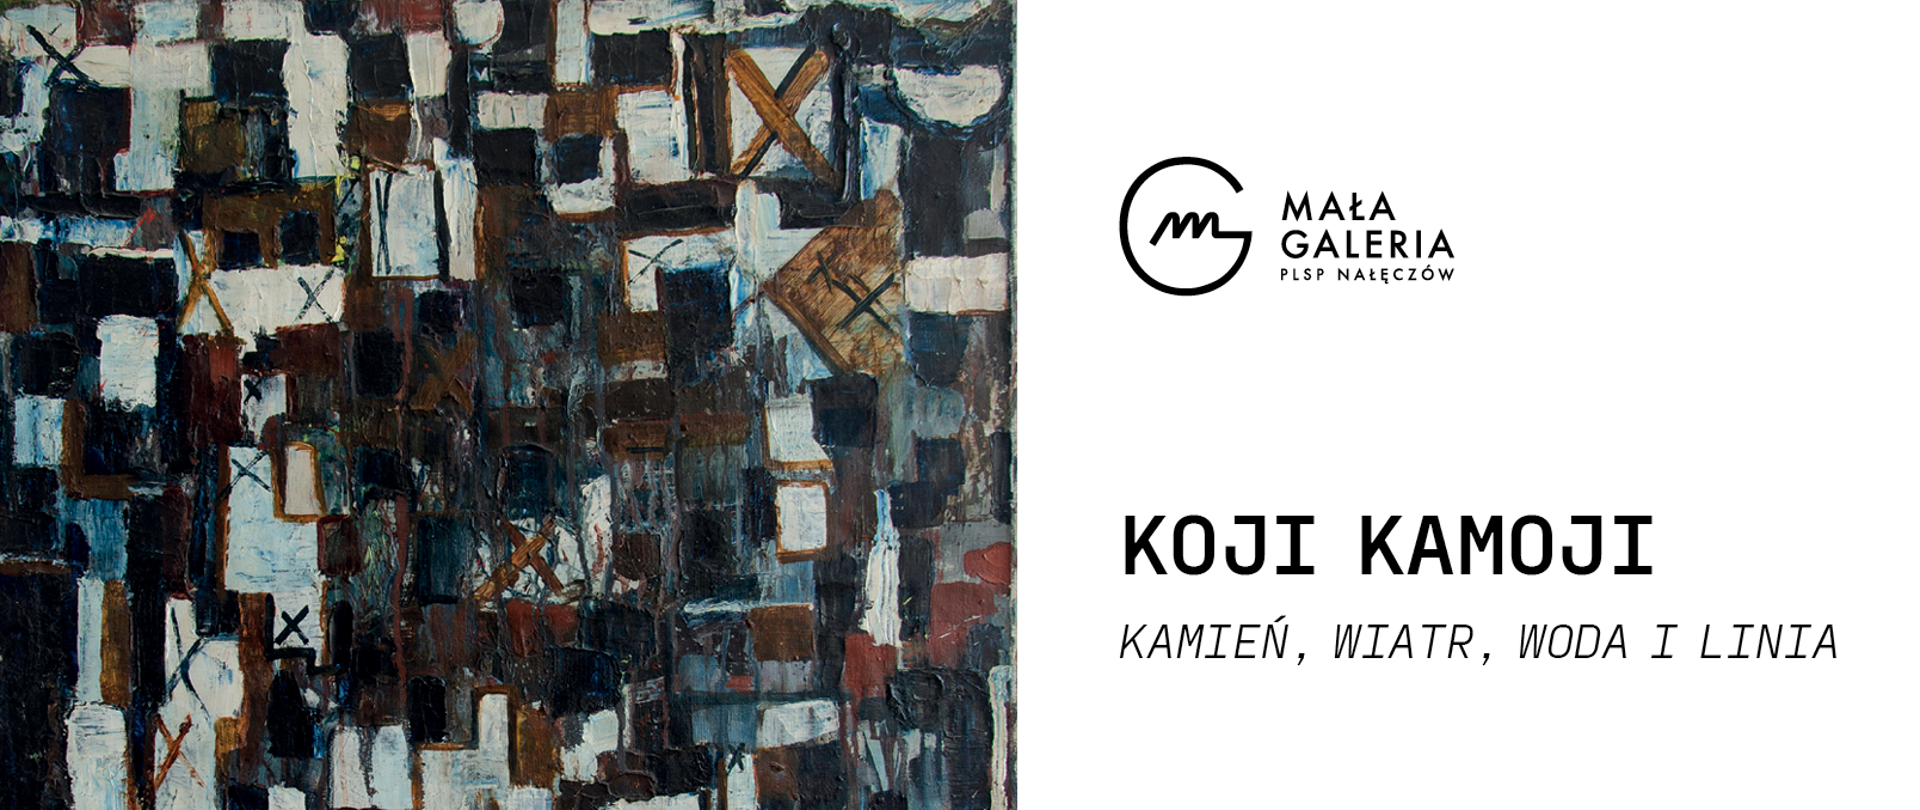 Zaproszenie na wystawę malarstwa Kojiego Kamoji. Reprodukcja obrazu abstrakcyjnego.